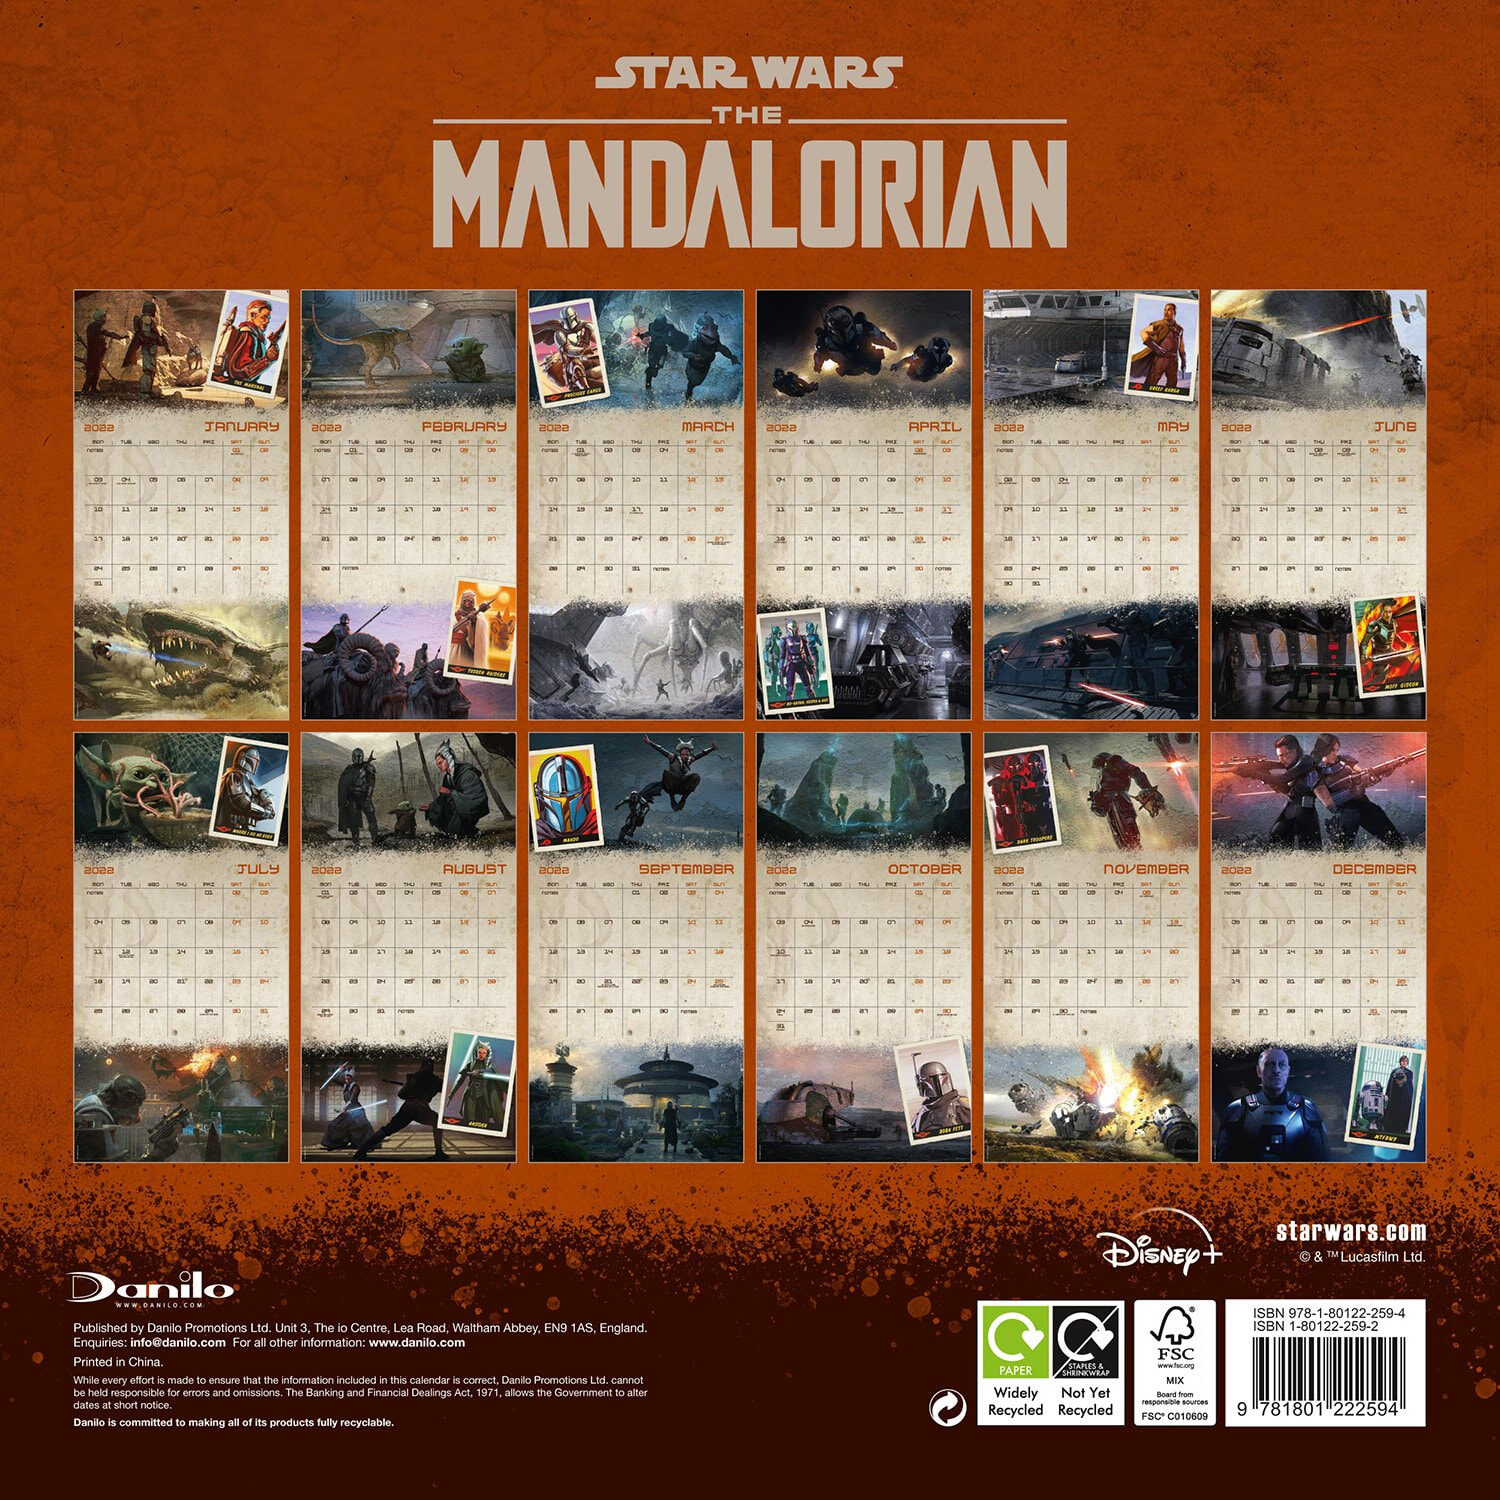 스타워즈 더 만달로리안 - 2022년 벽걸이 캘린더 (Official Star Wars: The Mandalorian 2022 Calendar) 